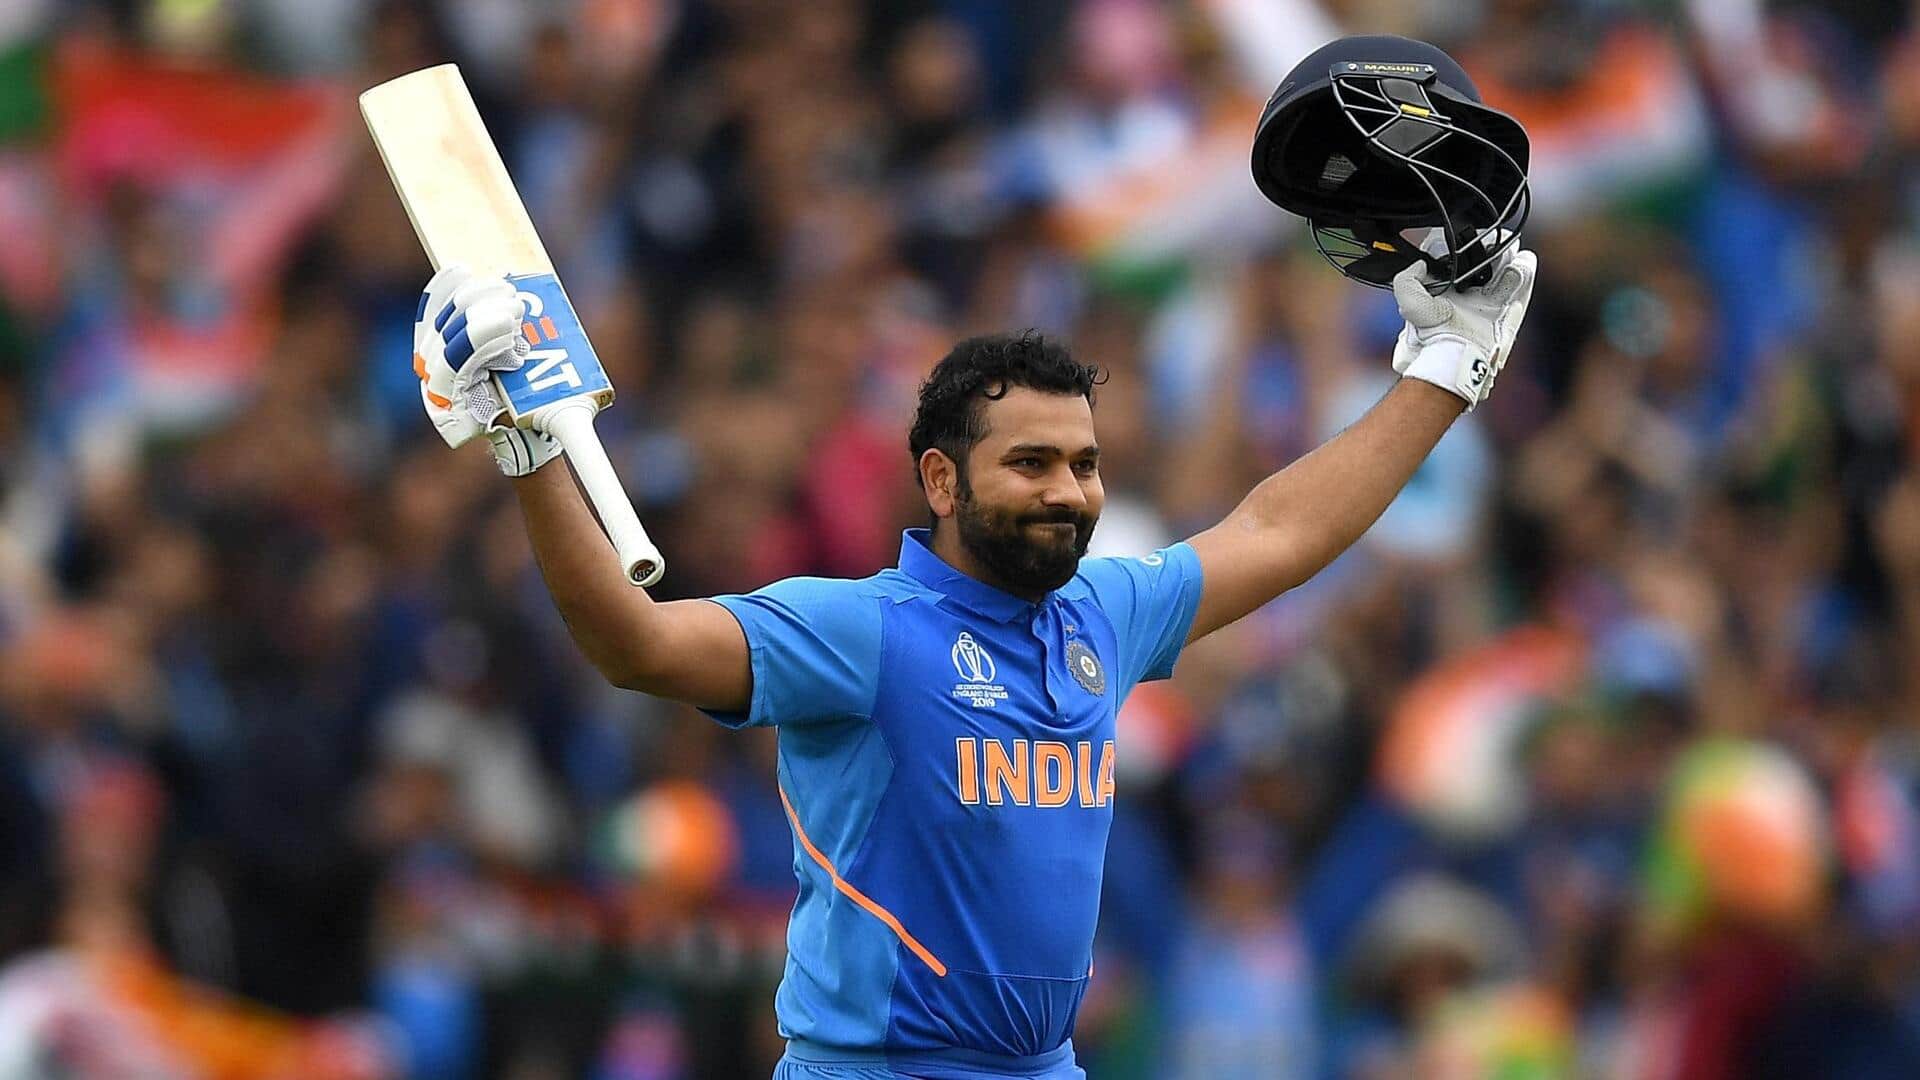 टी-20 विश्व कप: वेस्टइंडीज की धरती पर भारत के प्रमुख बल्लेबाजों का ऐसा रहा है प्रदर्शन